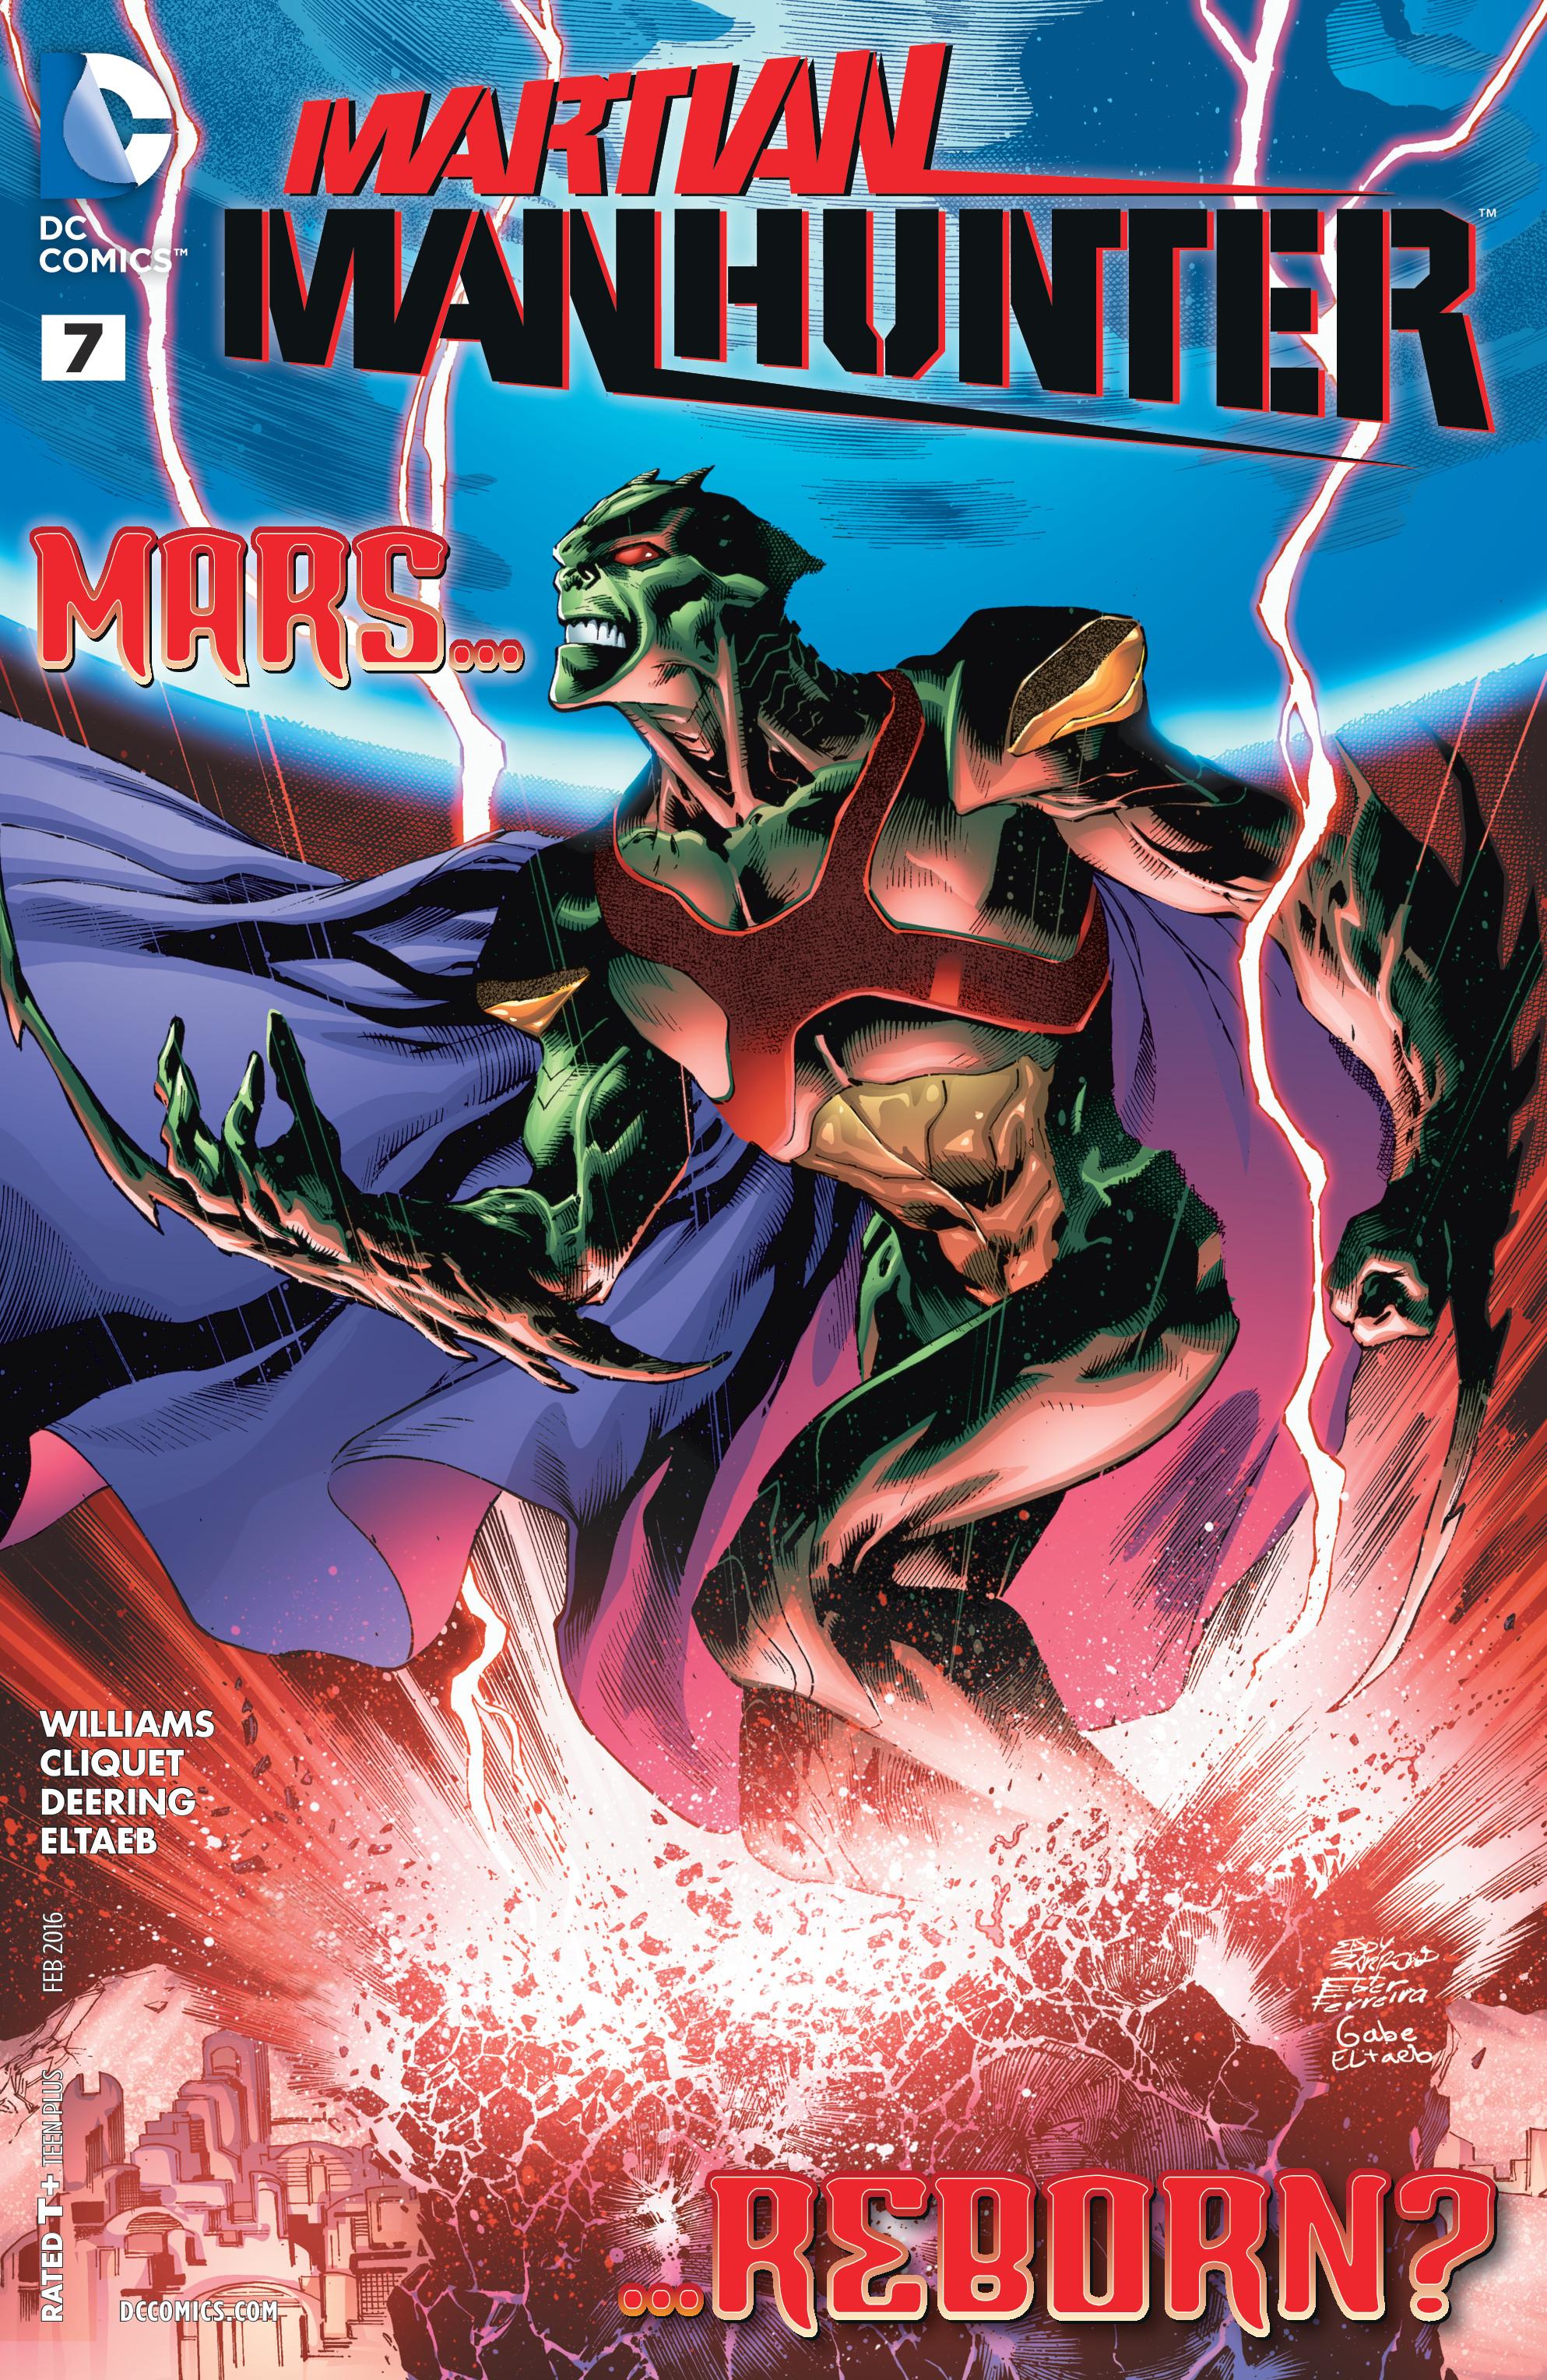 Martian Manhunter Vol. 4 #7